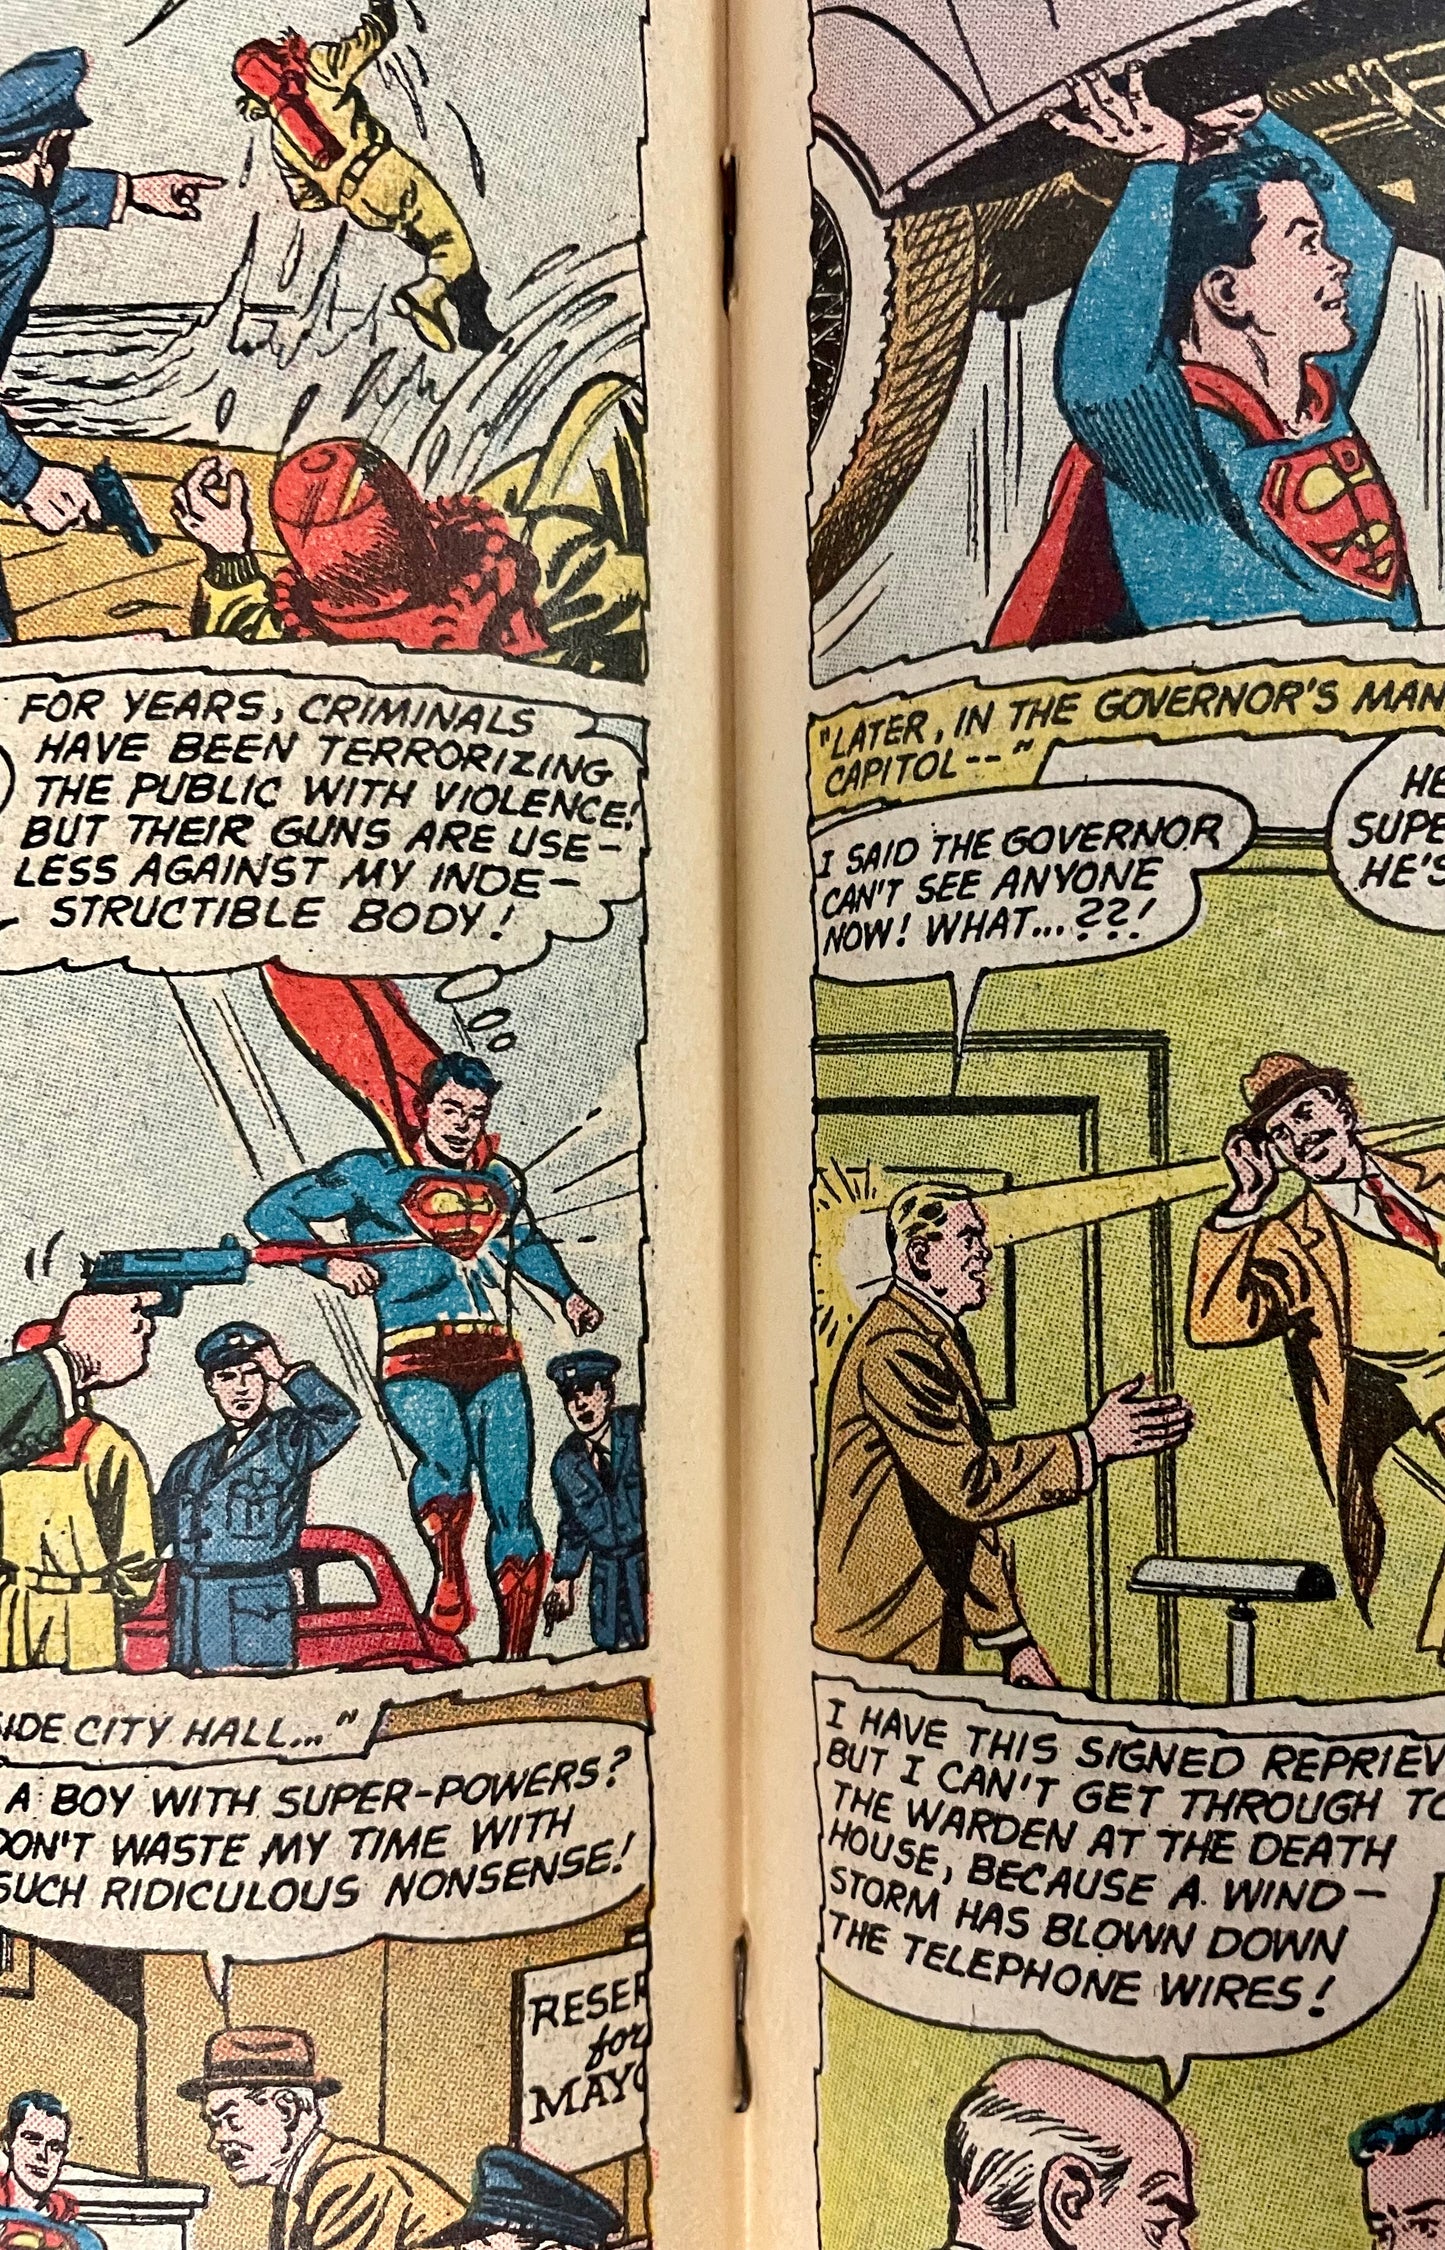 DC Comics Superman No. 144